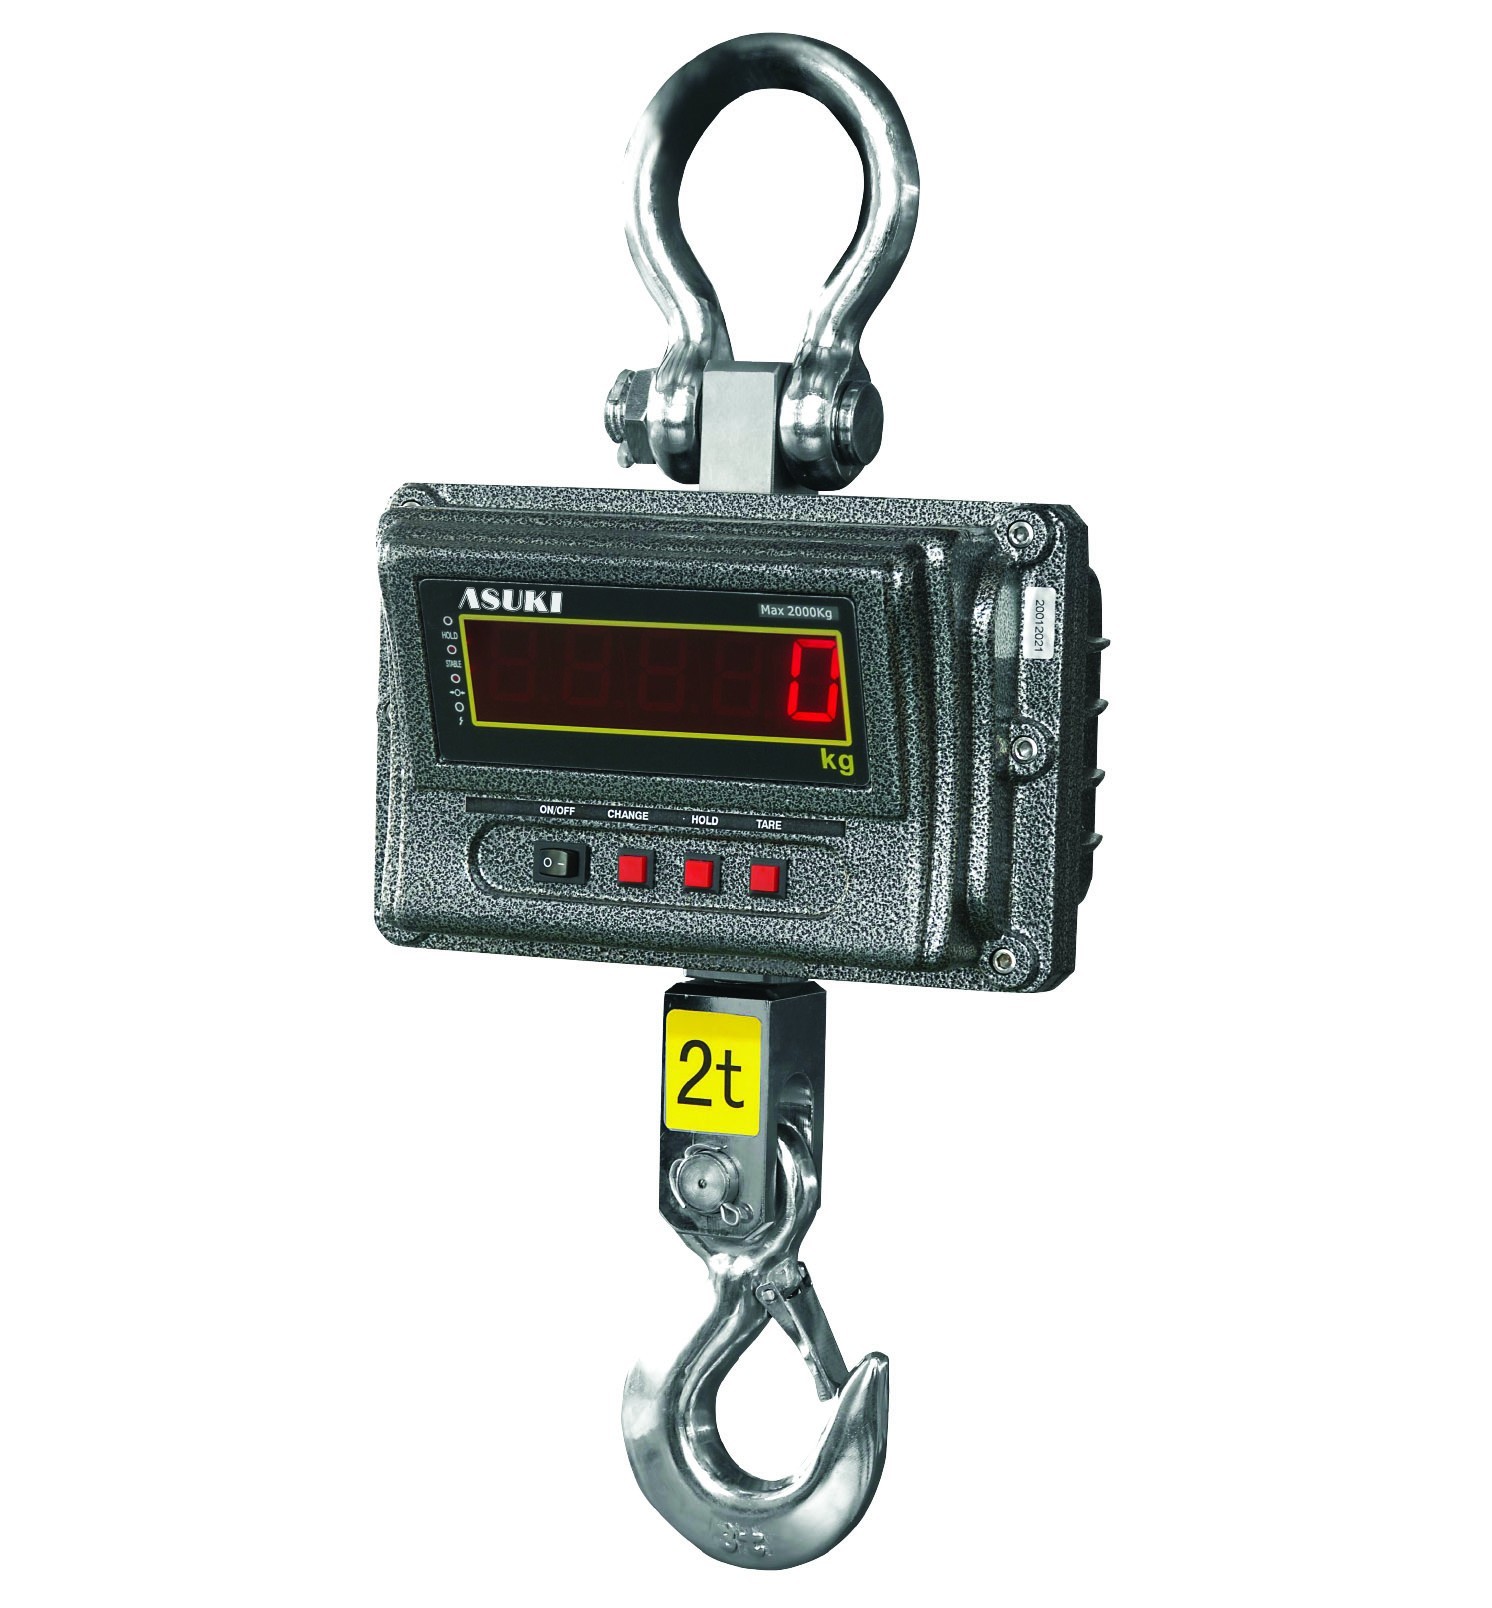 LCD Hook Hanging digital weighing scale